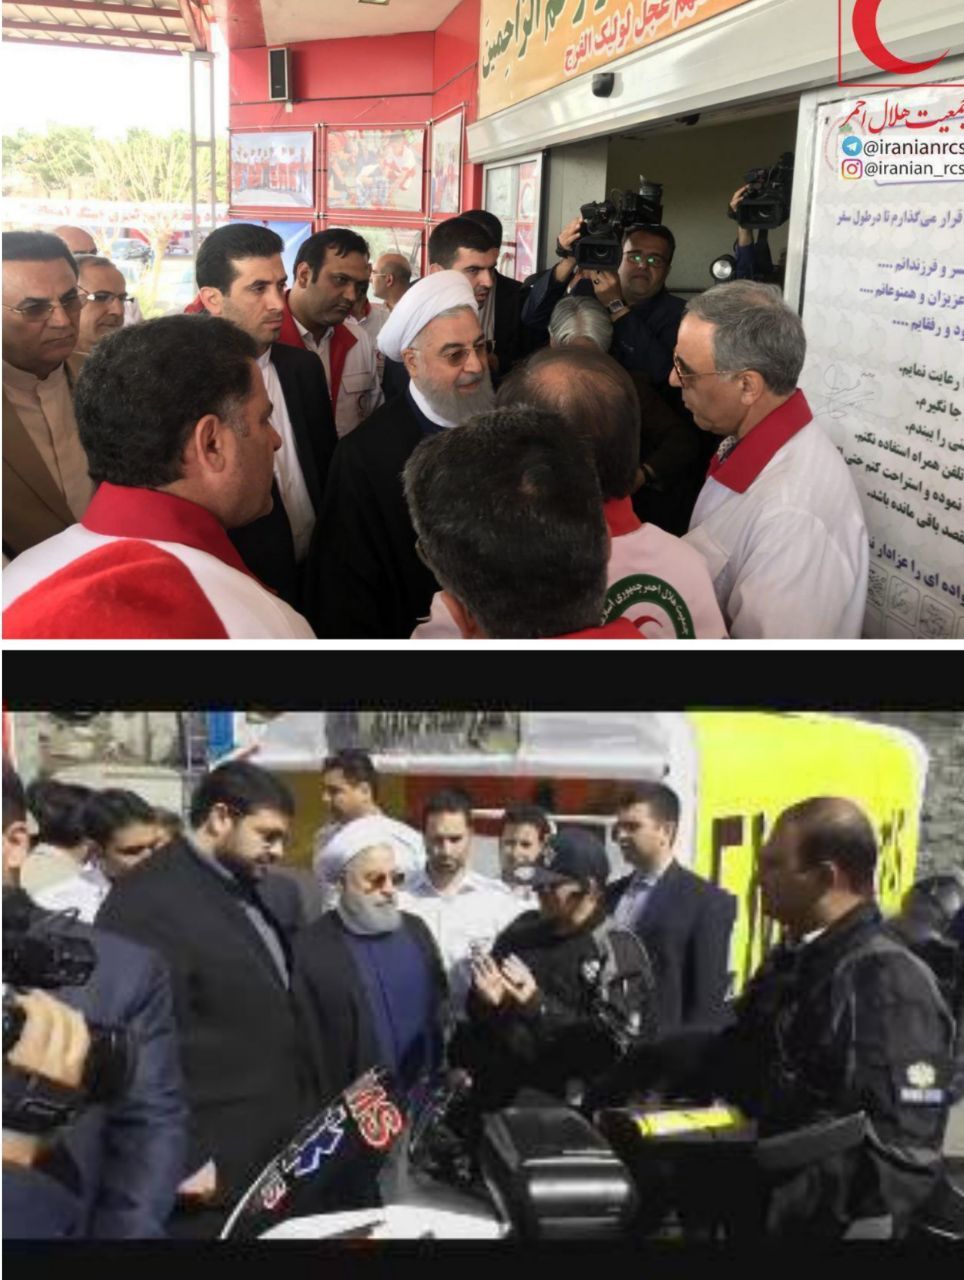 بازدید سرزده روحانی از ایستگاه سلامت اورژانس در بزرگراه تهران- کرج